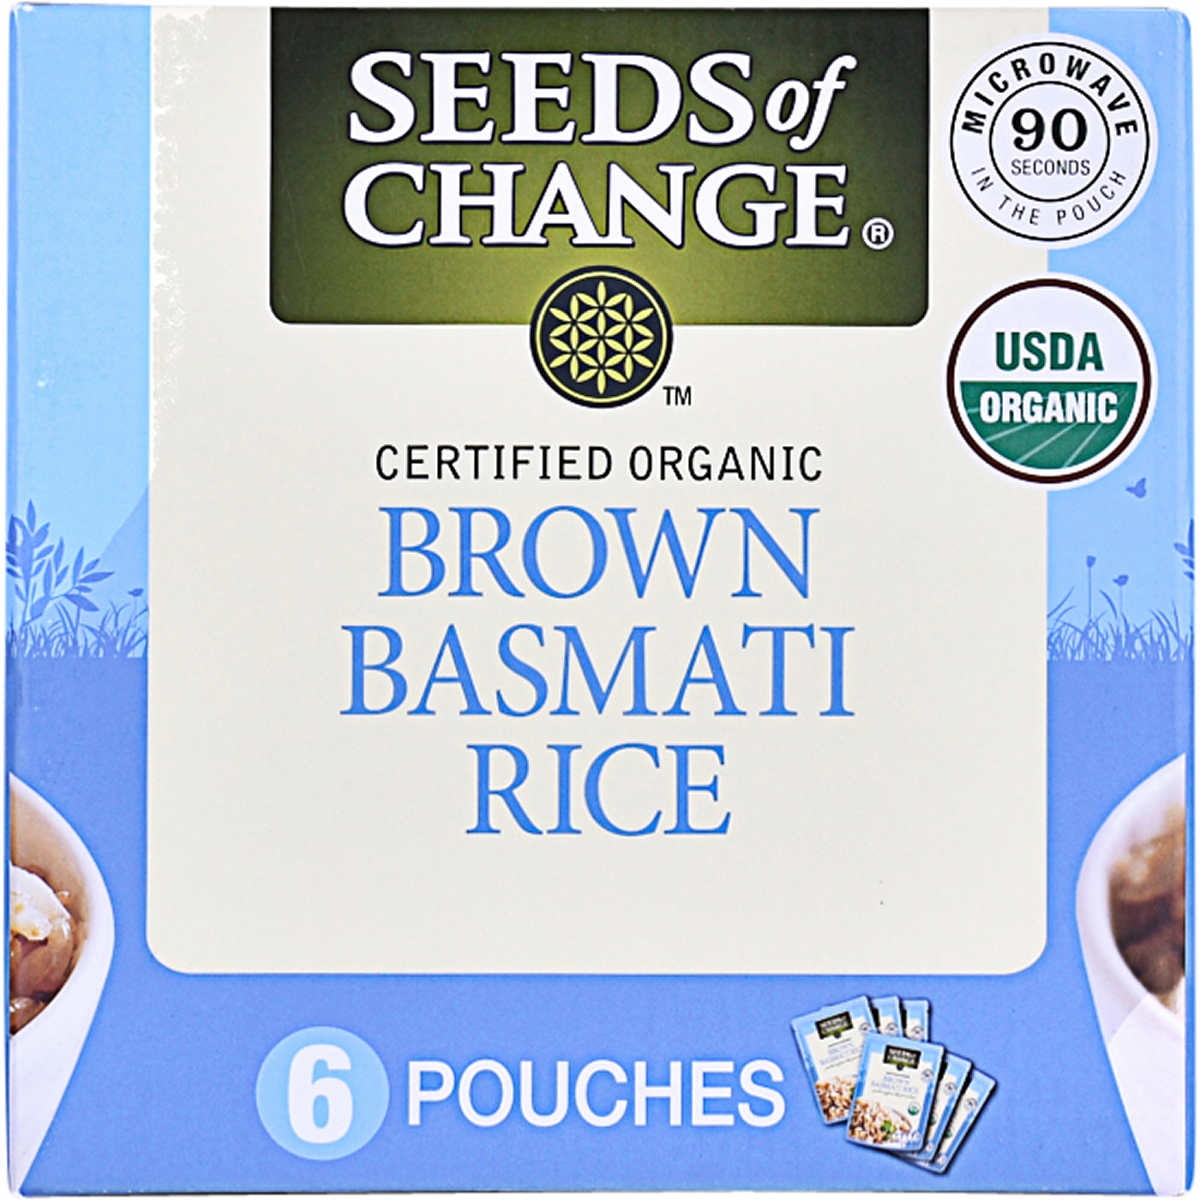 Seeds of Change Organic Brown Basmati Rice, 8.5 oz, 6 ...